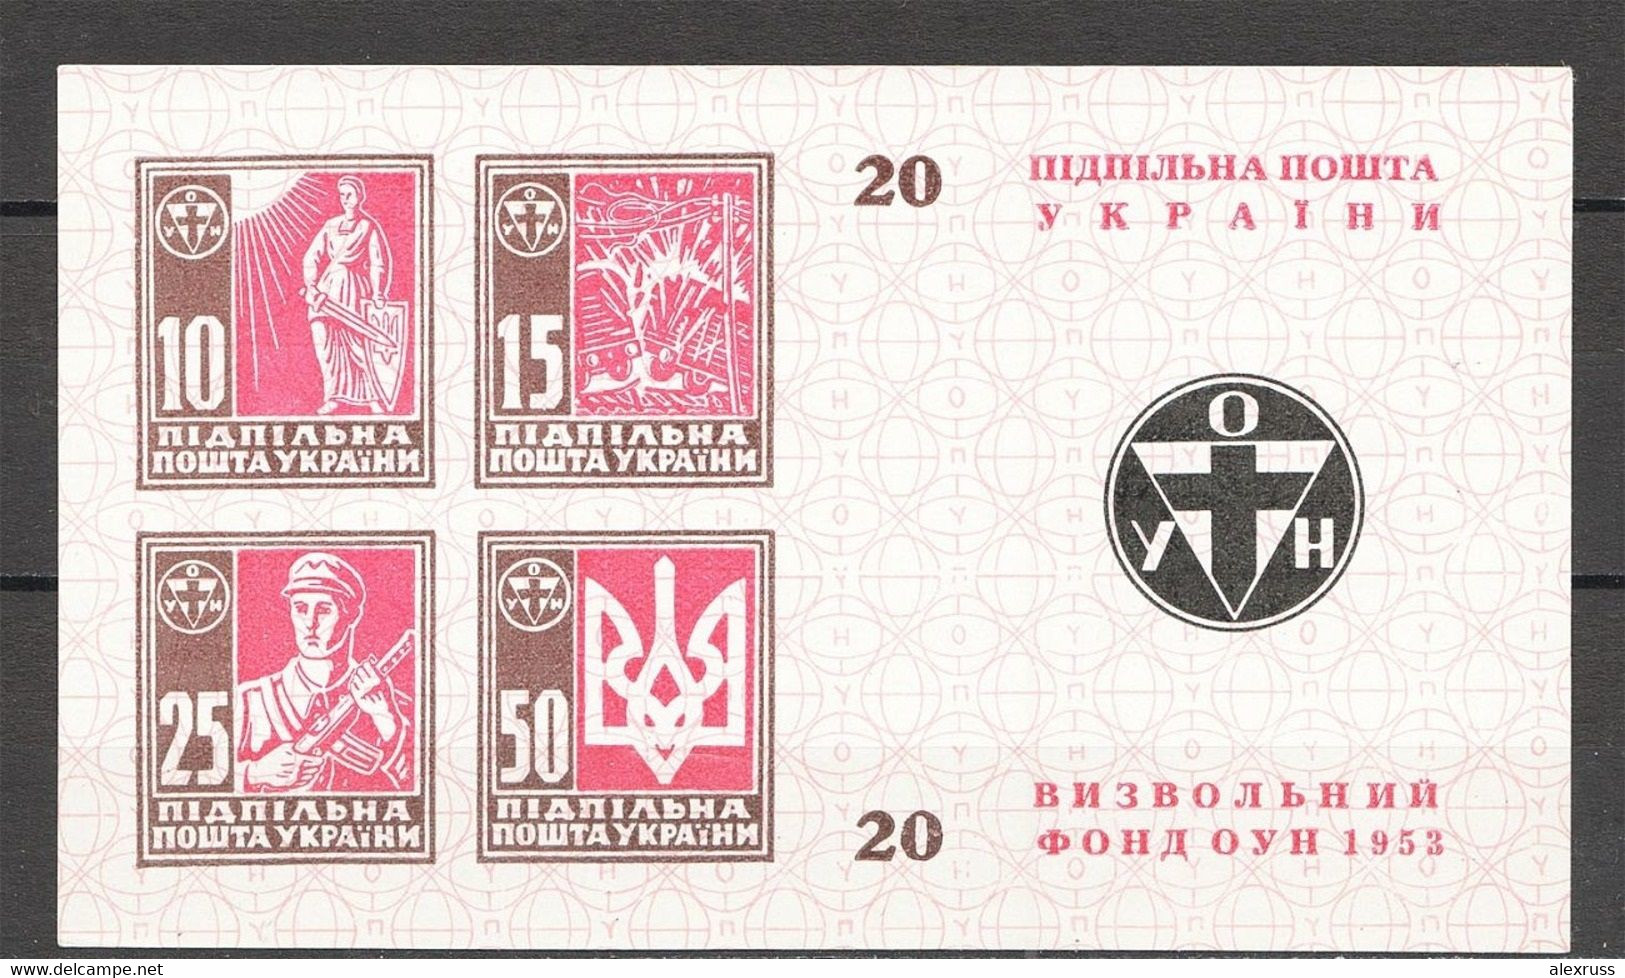 Ukraine 1953 ОУН Liberation Fund, Underground Post Block Sheet # 20, VF MNH** (LTSK-3) - Ukraine & West Ukraine